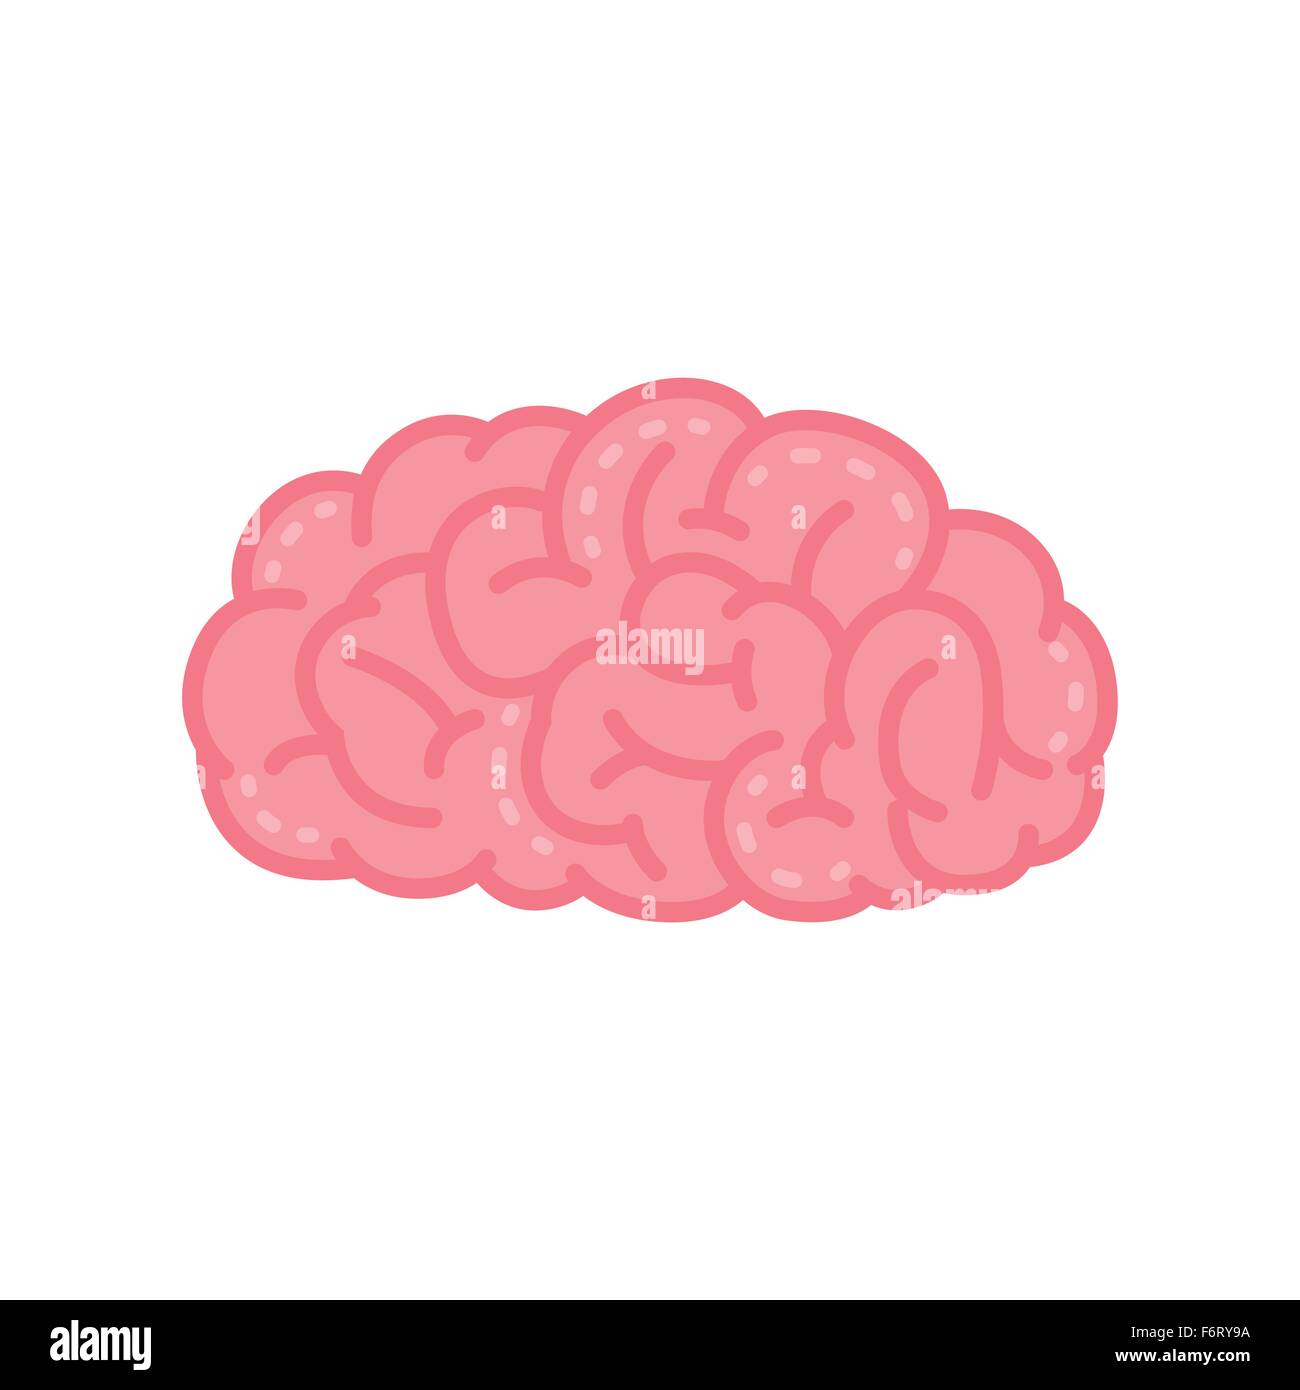 Vektor-Illustration des menschlichen Gehirns in rosa Farbe. Stock Vektor